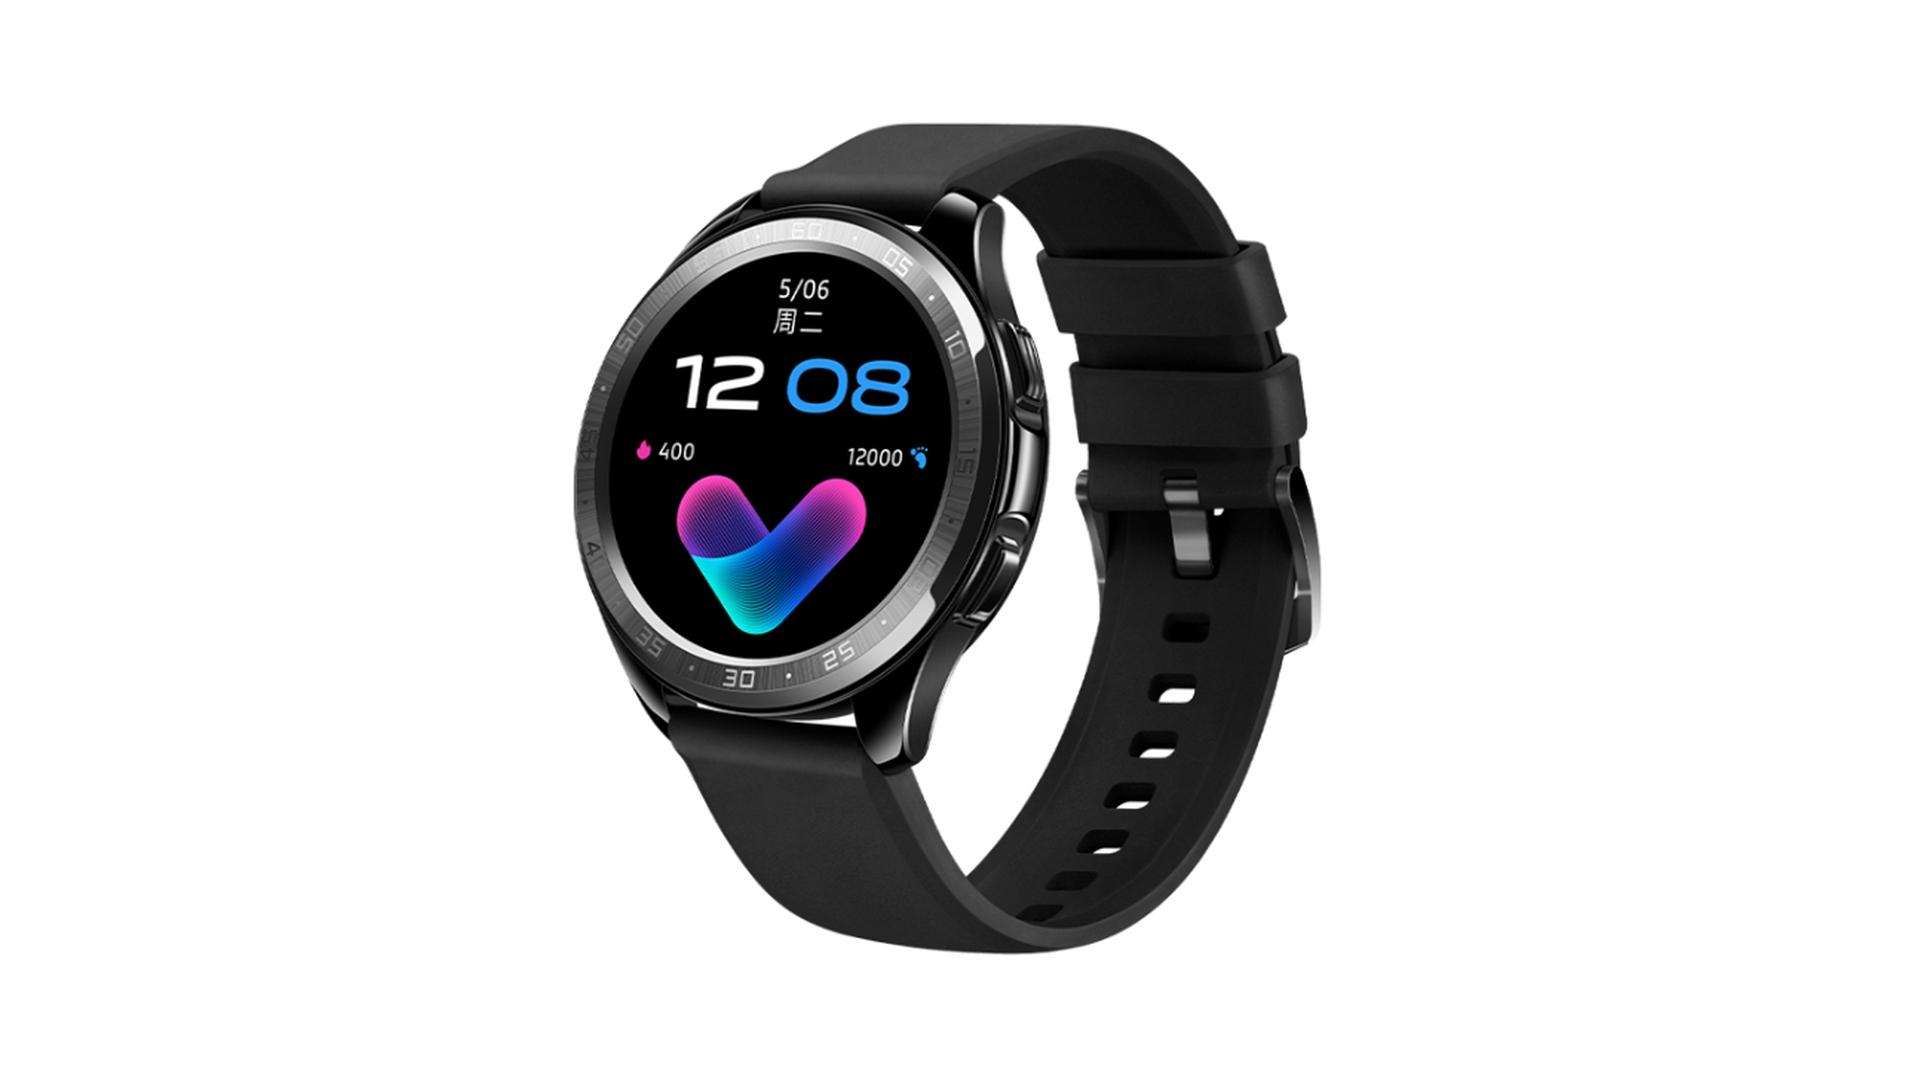 Vivo Watch की बैटरी लाइफ है 18 दिन की, जानें इसकी कीमत व अन्य जानकारी